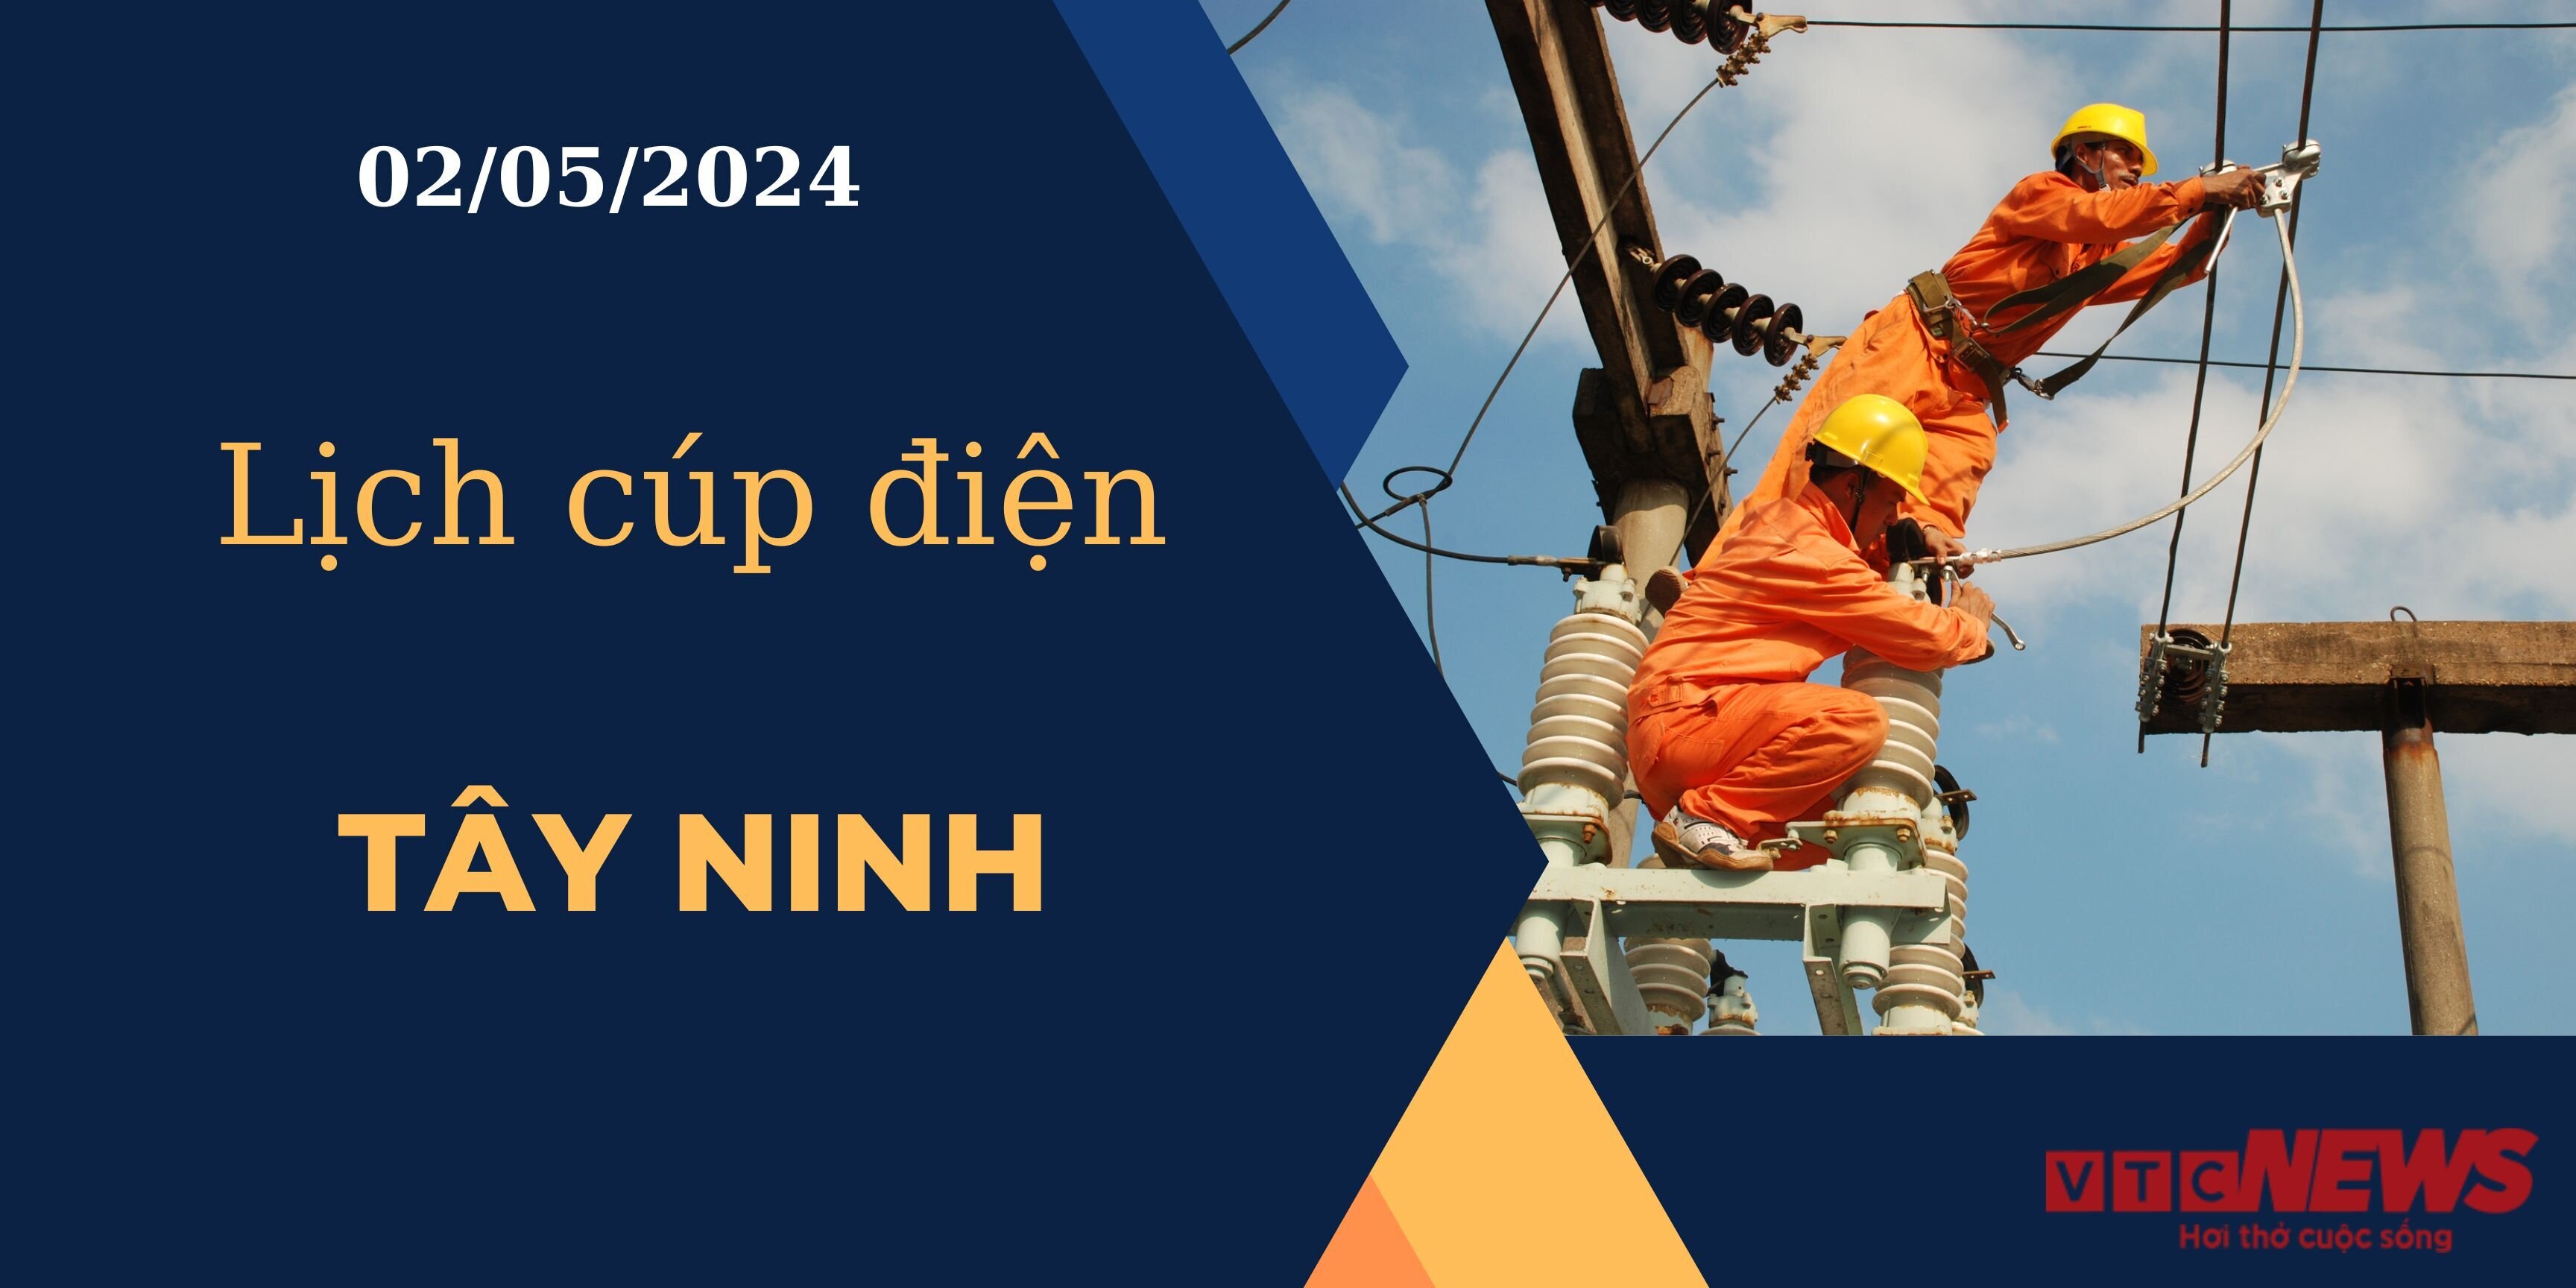 Lịch cúp điện hôm nay ngày 02/05/2024 tại Tây Ninh